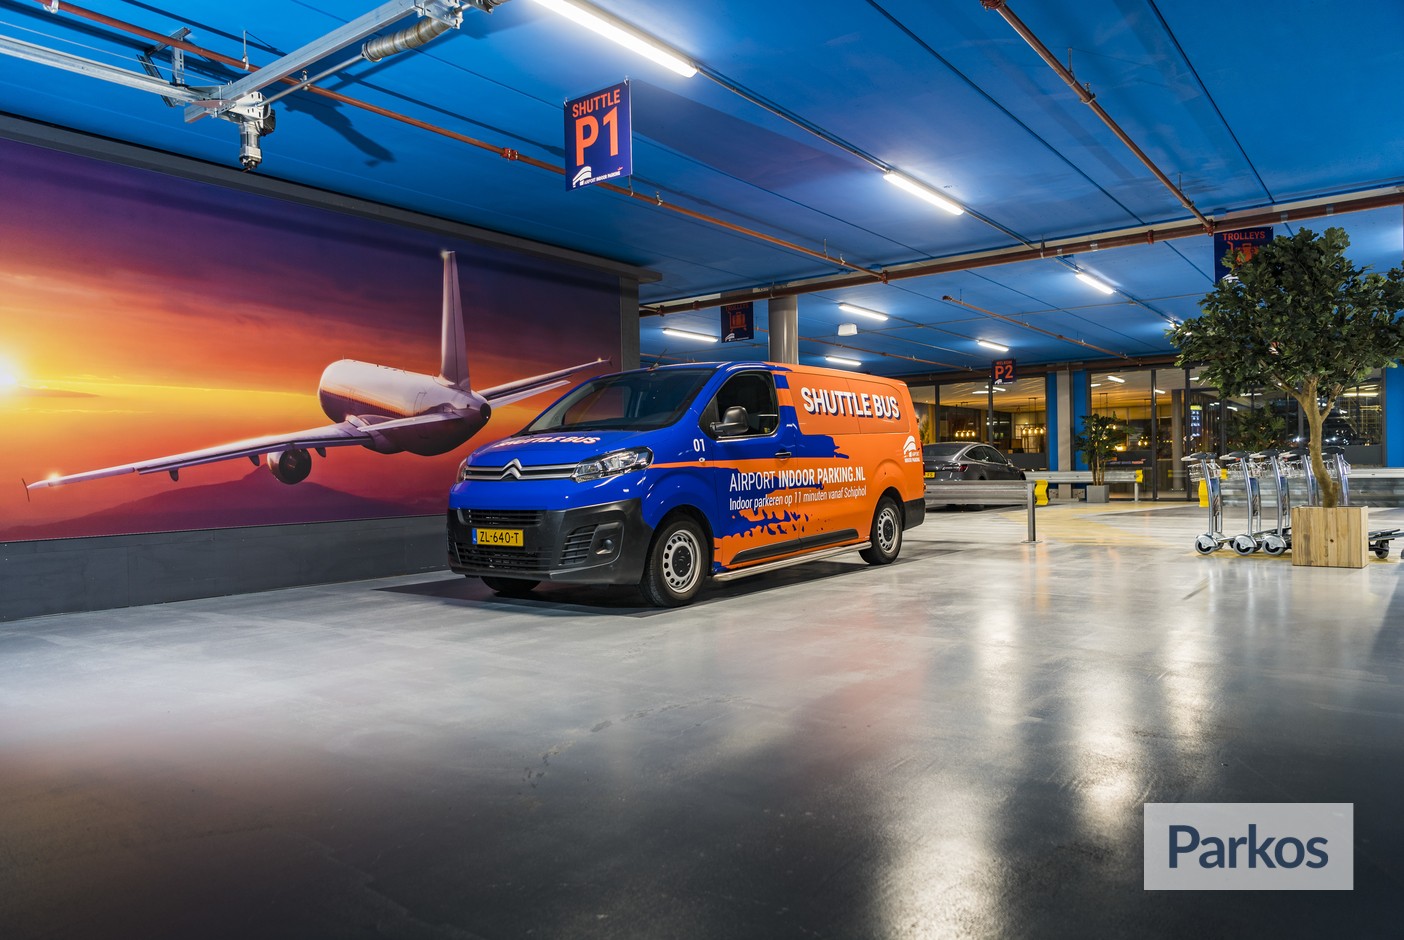 Airport Indoor Parking - Parken Flughafen Amsterdam - picture 1